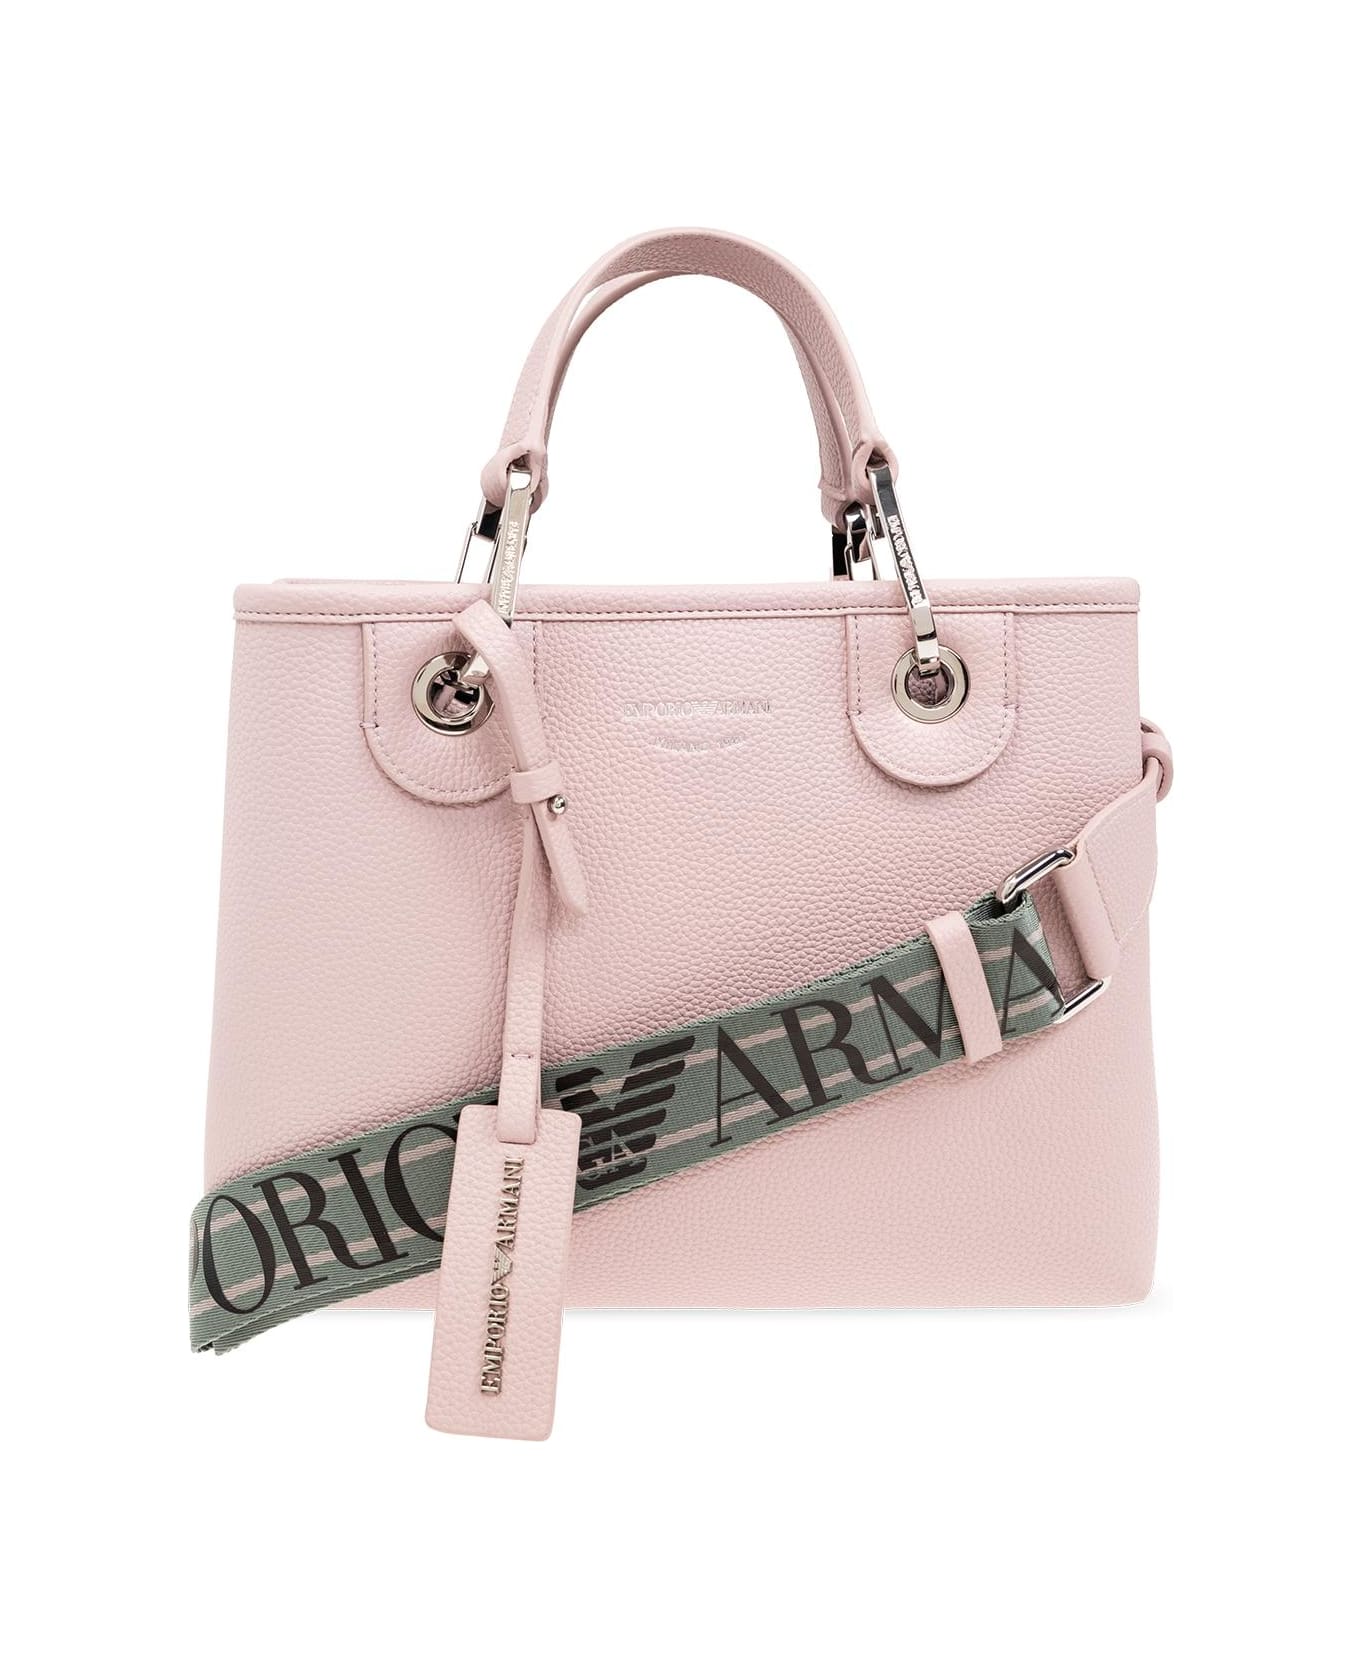 Emporio Armani Shopper Bag - Ortensia/Urban Chic